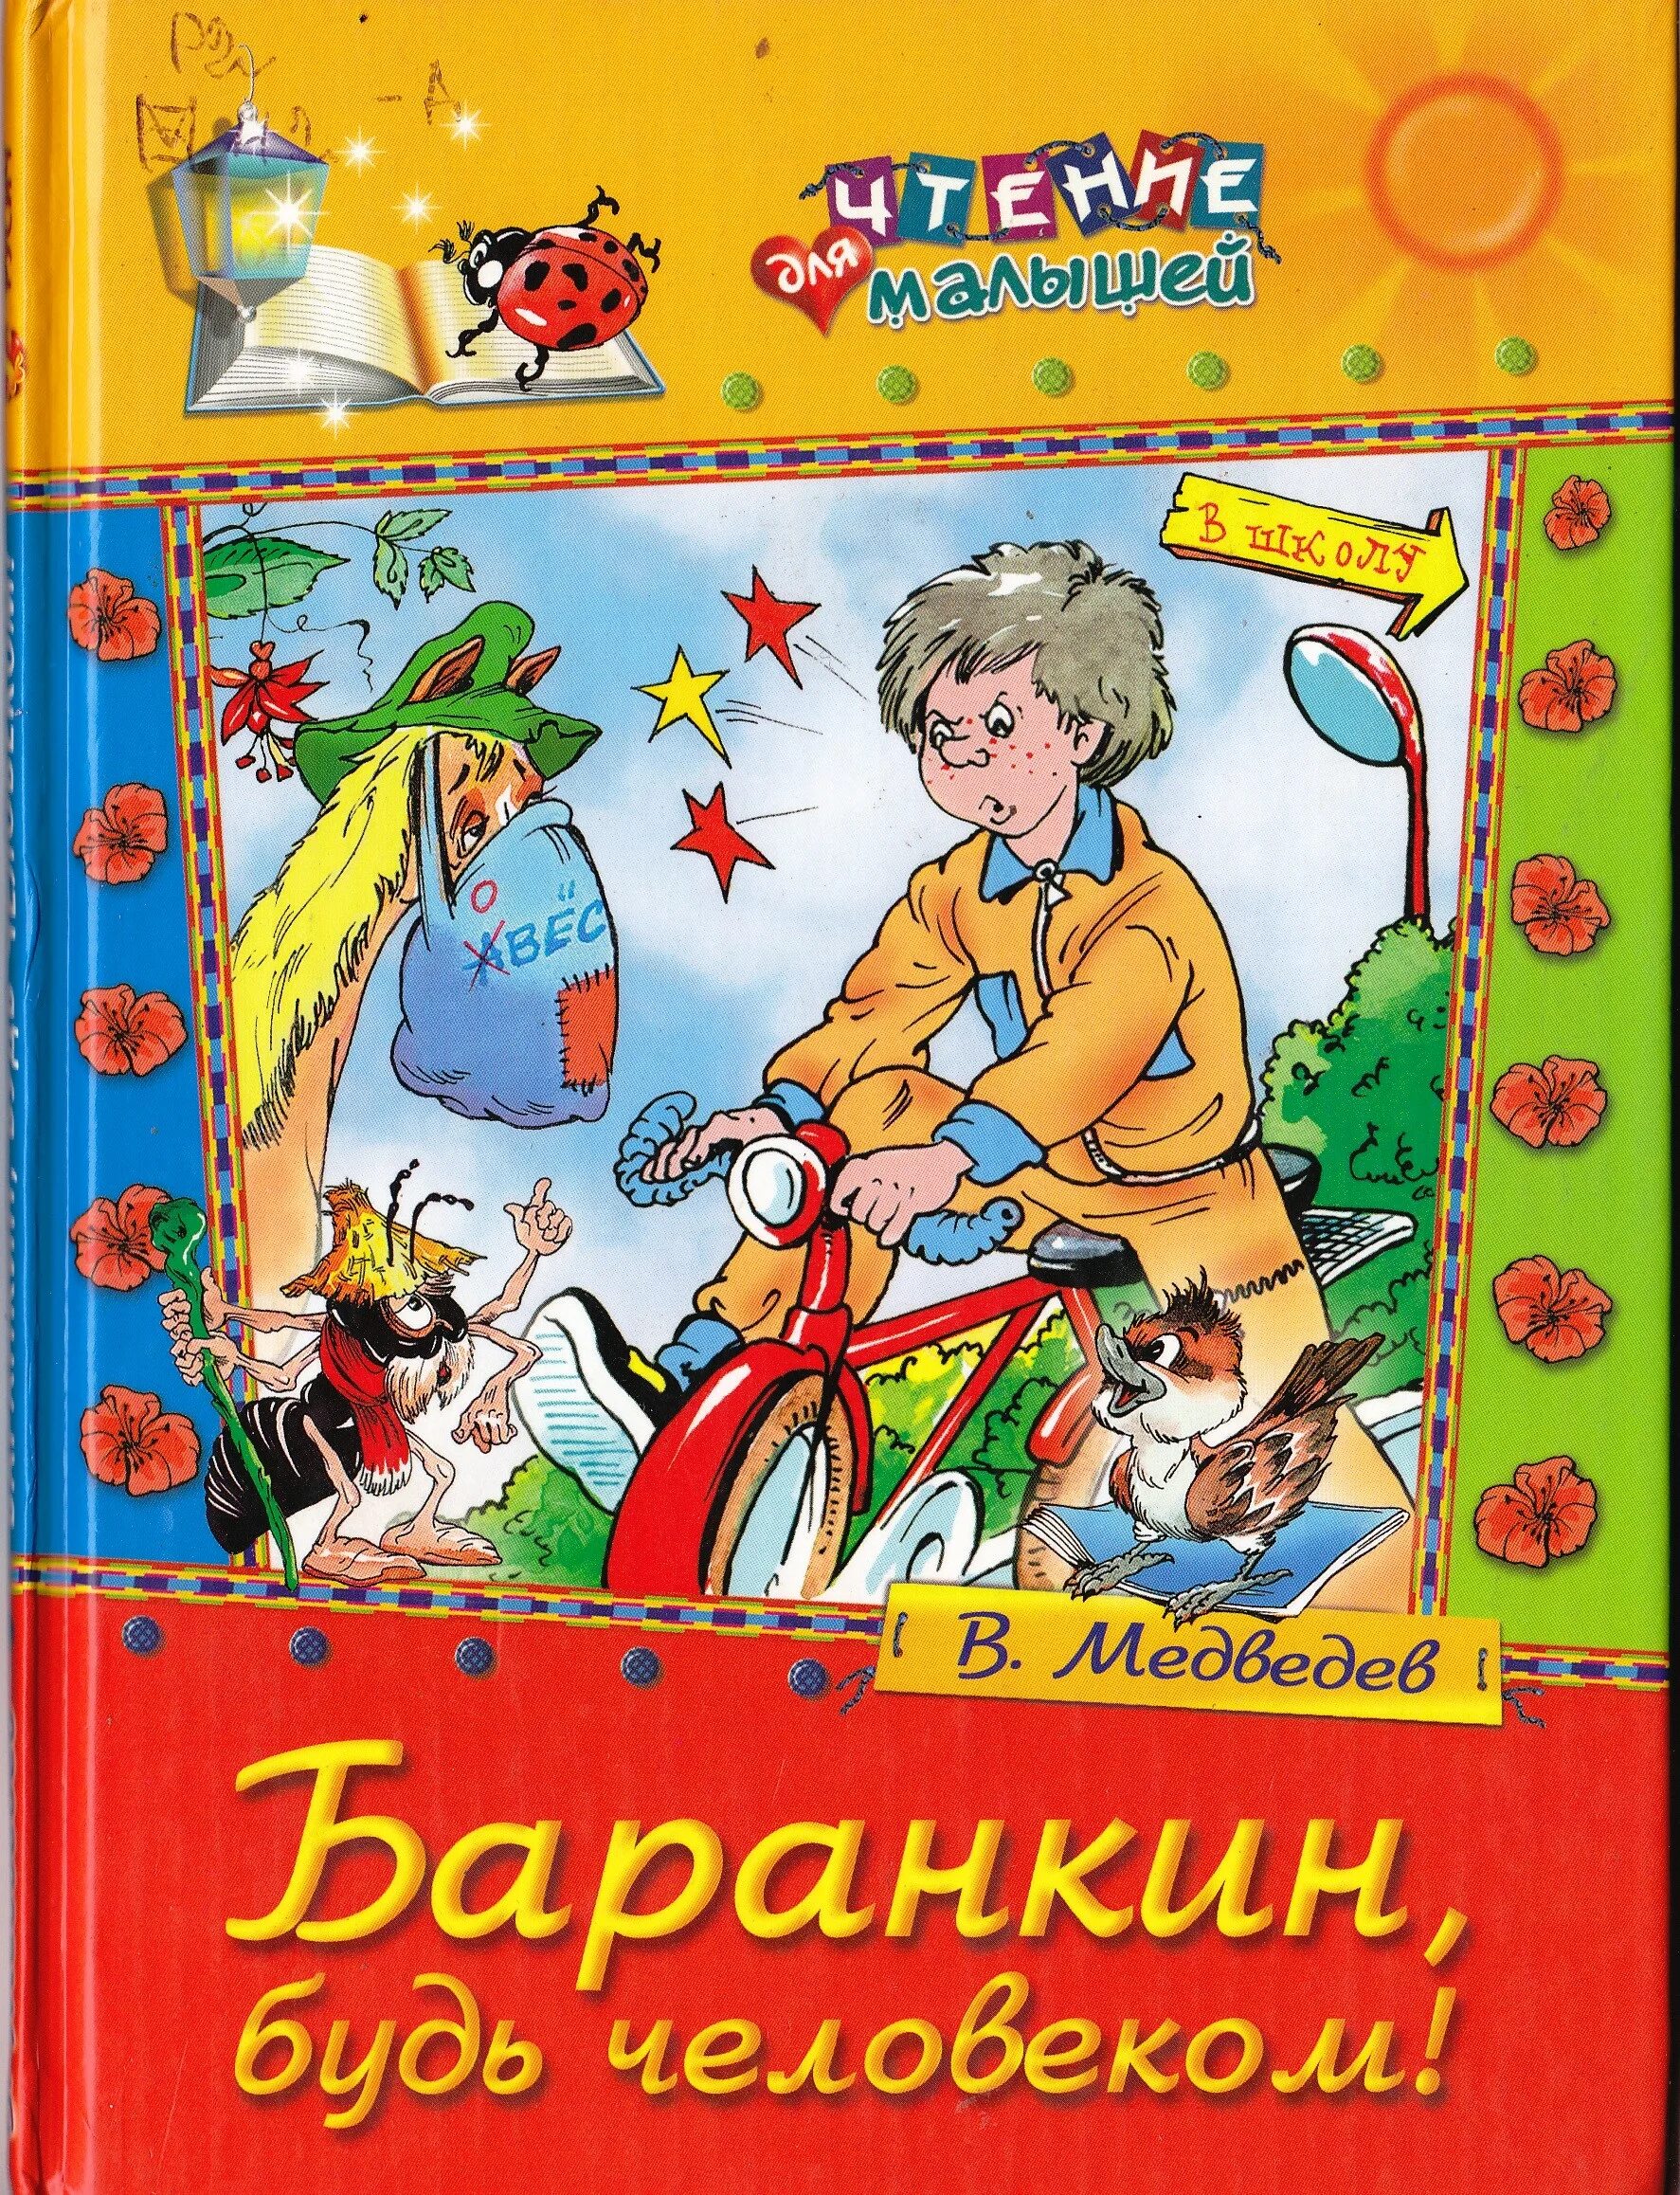 Аудиокнига книги 7 лет. Баранкин будь человеком книга. Медведев книги для детей.